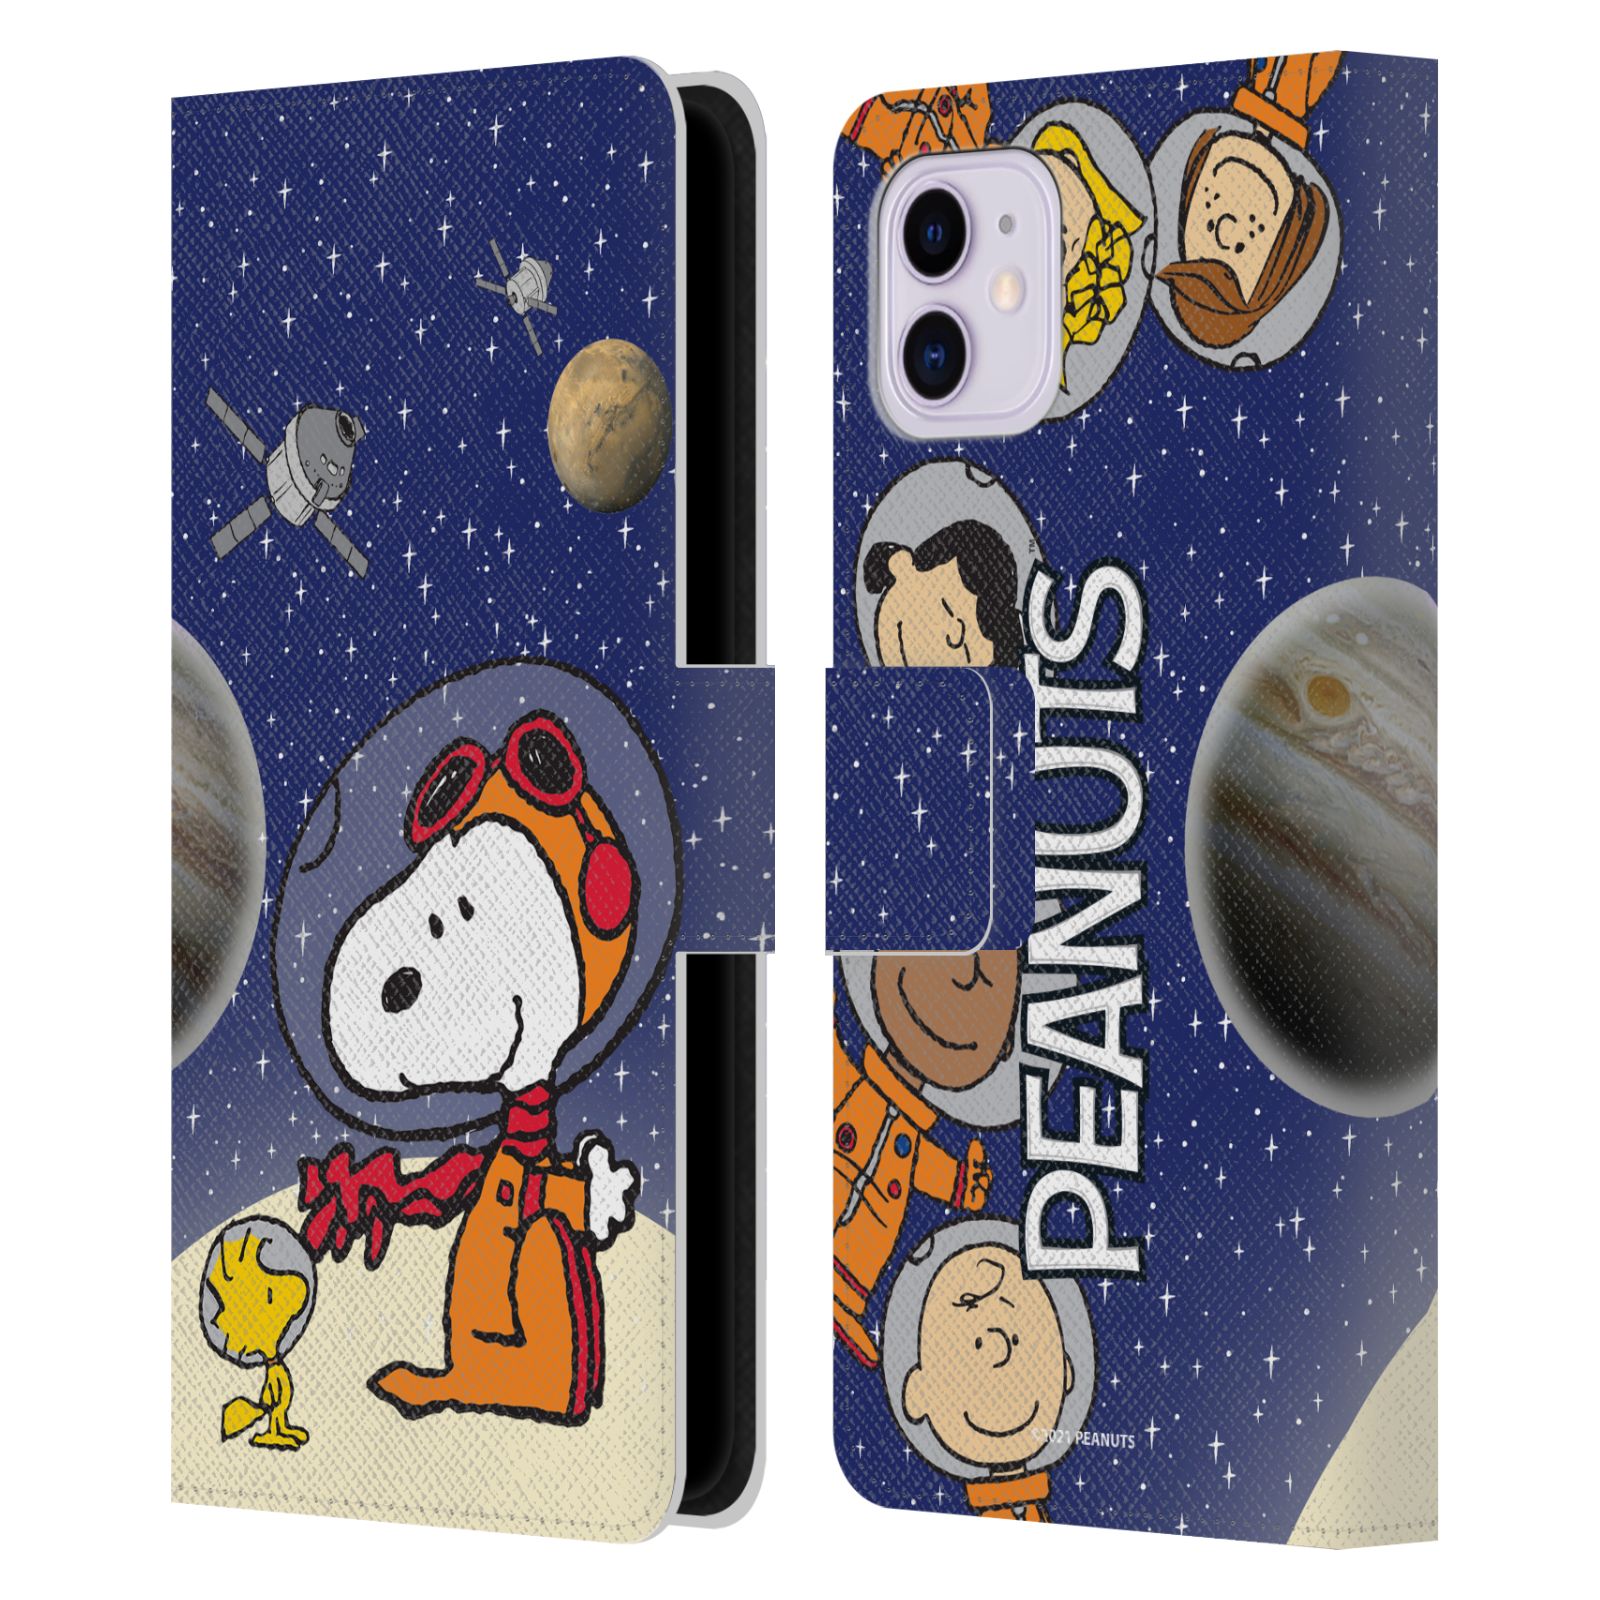 Pouzdro na mobil Apple Iphone 11 - HEAD CASE - Peanuts Snoopy ve vesmíru 2